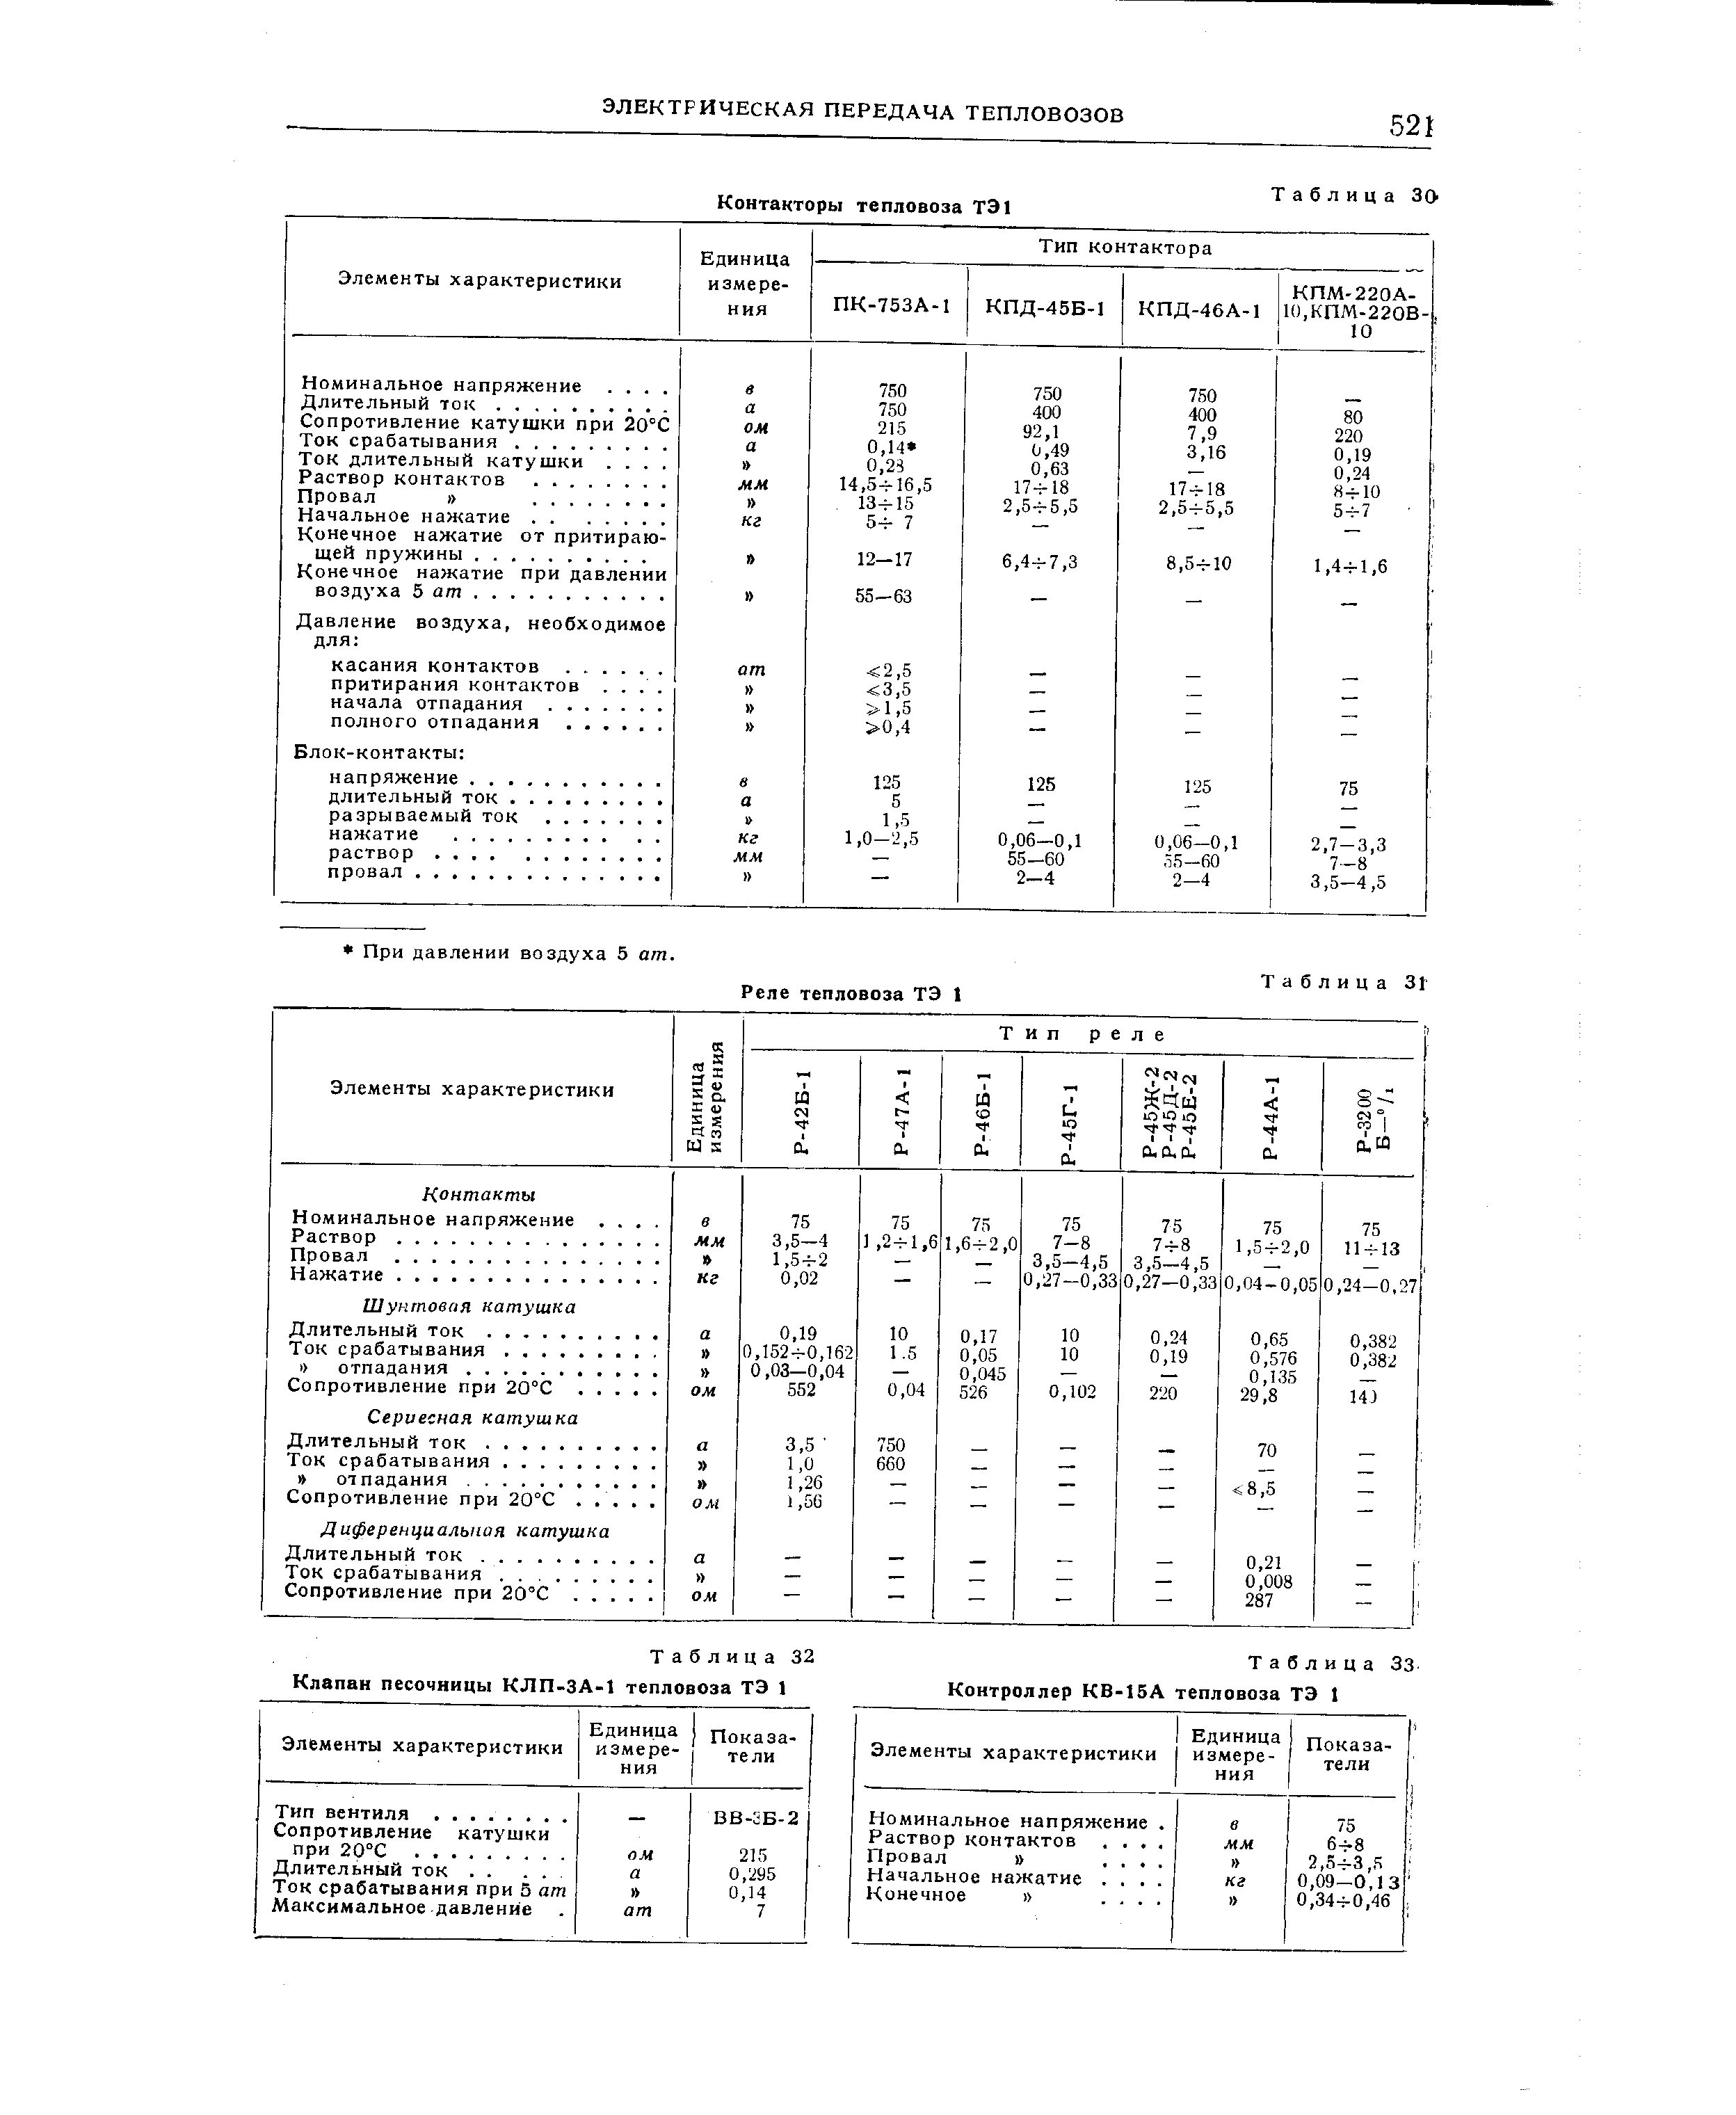 Таблица 32 Клапан песочницы КЛП-ЗА-1 тепловоза ТЭ 1
